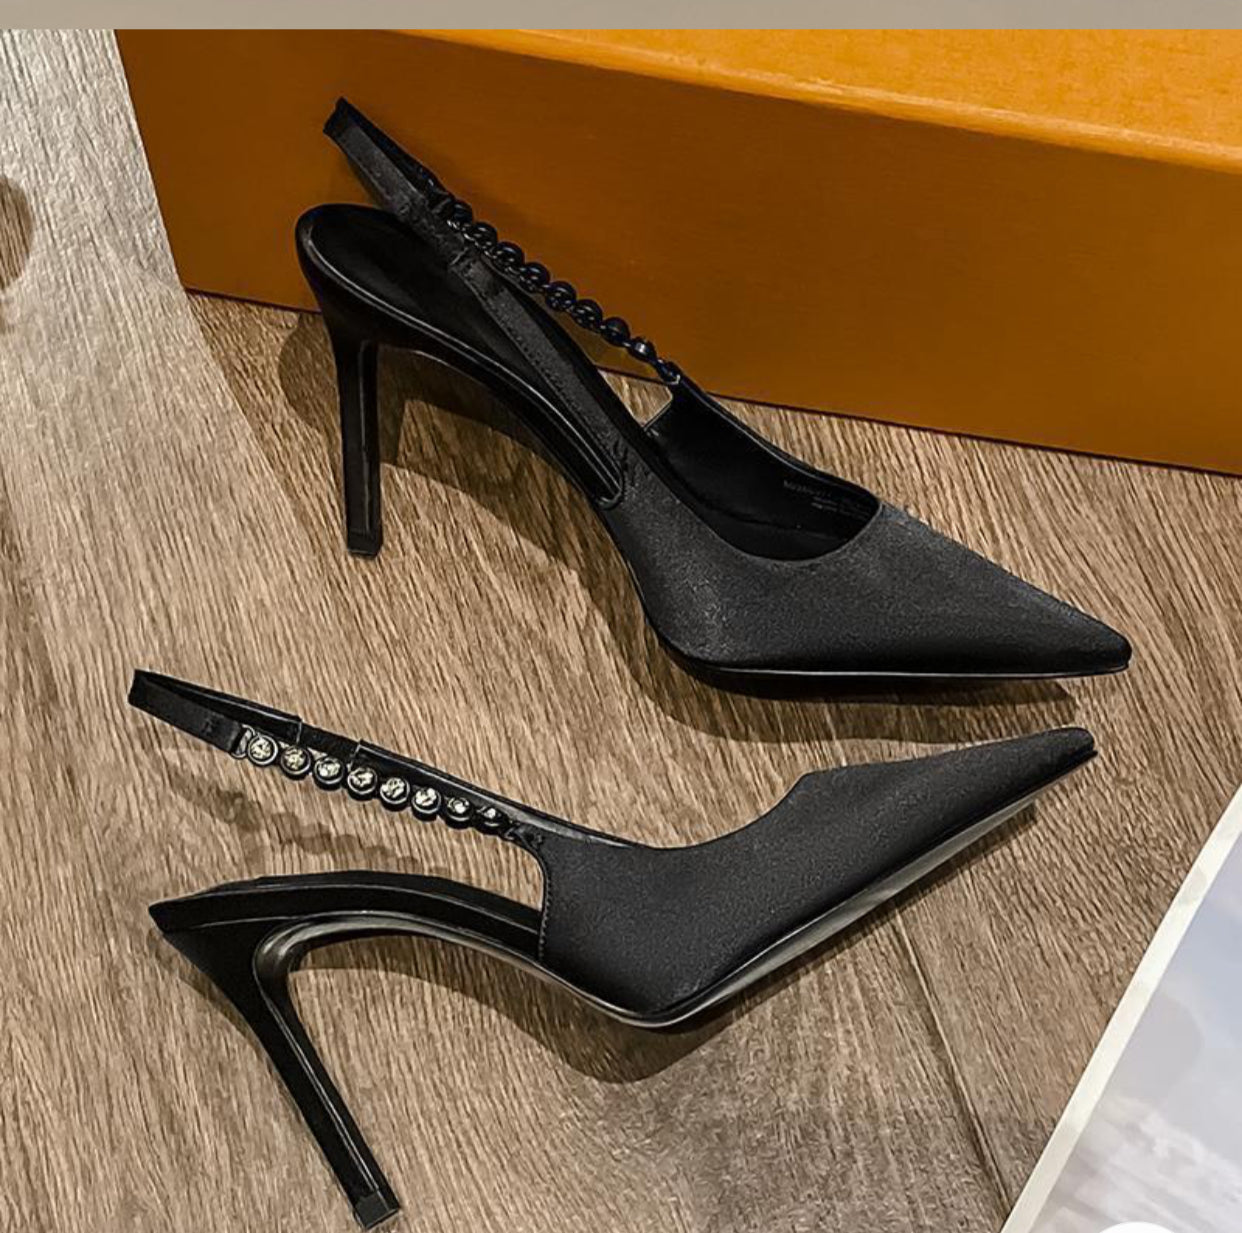 Women’s heels